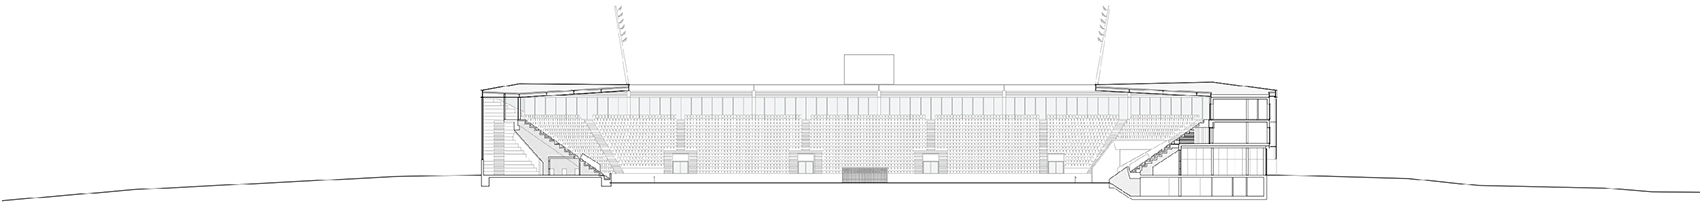 洛桑市新足球场馆，瑞士/散发宁静感的市郊体育设施-101